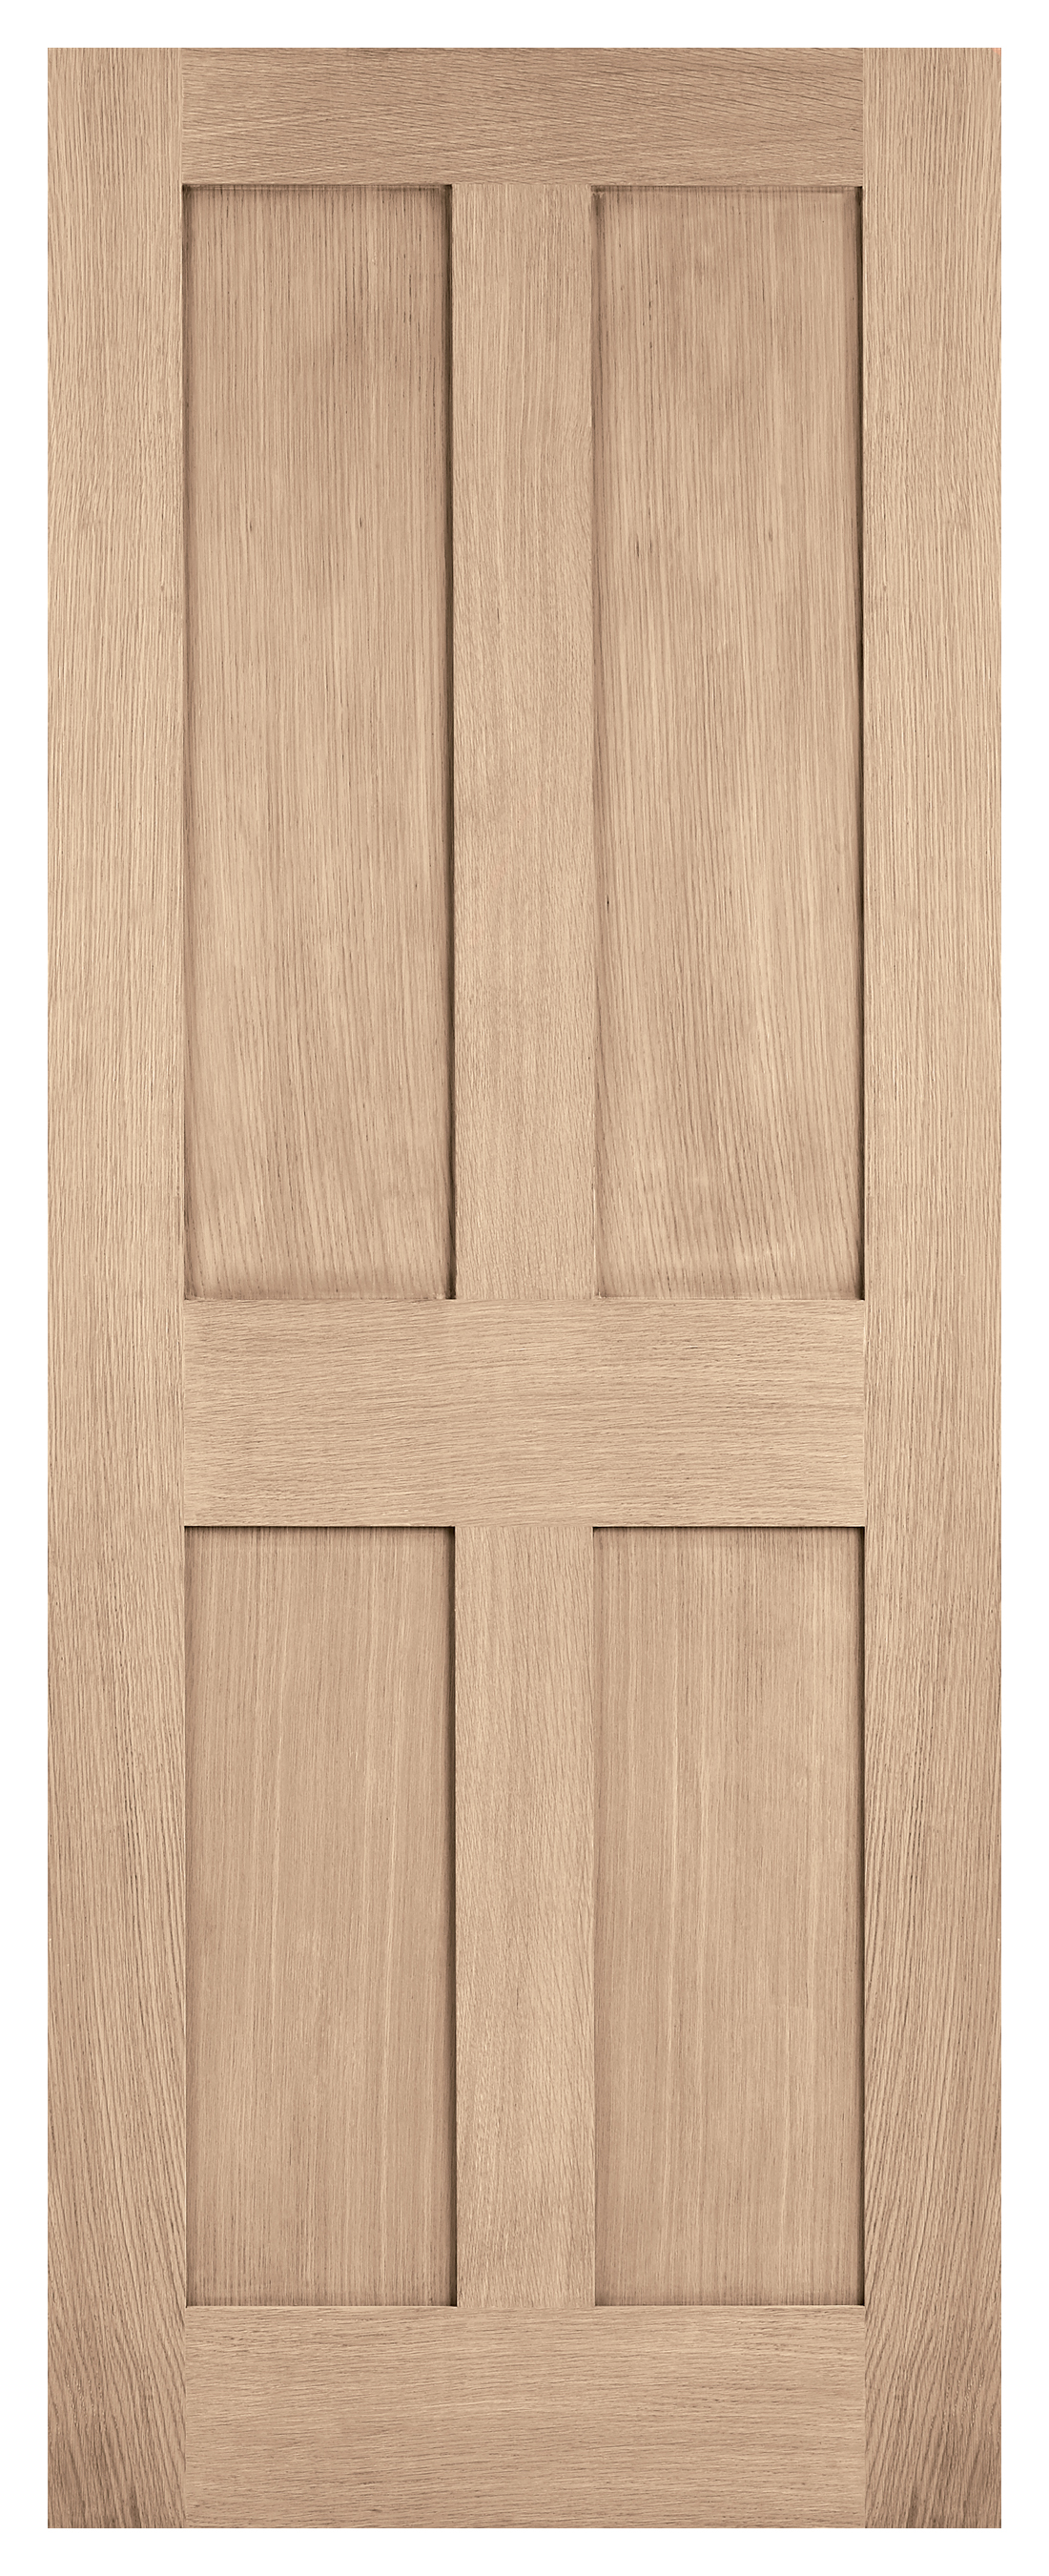 LPD Internal London 4 Panel Unfinished Oak FD30 Fire Door - 1981 mm